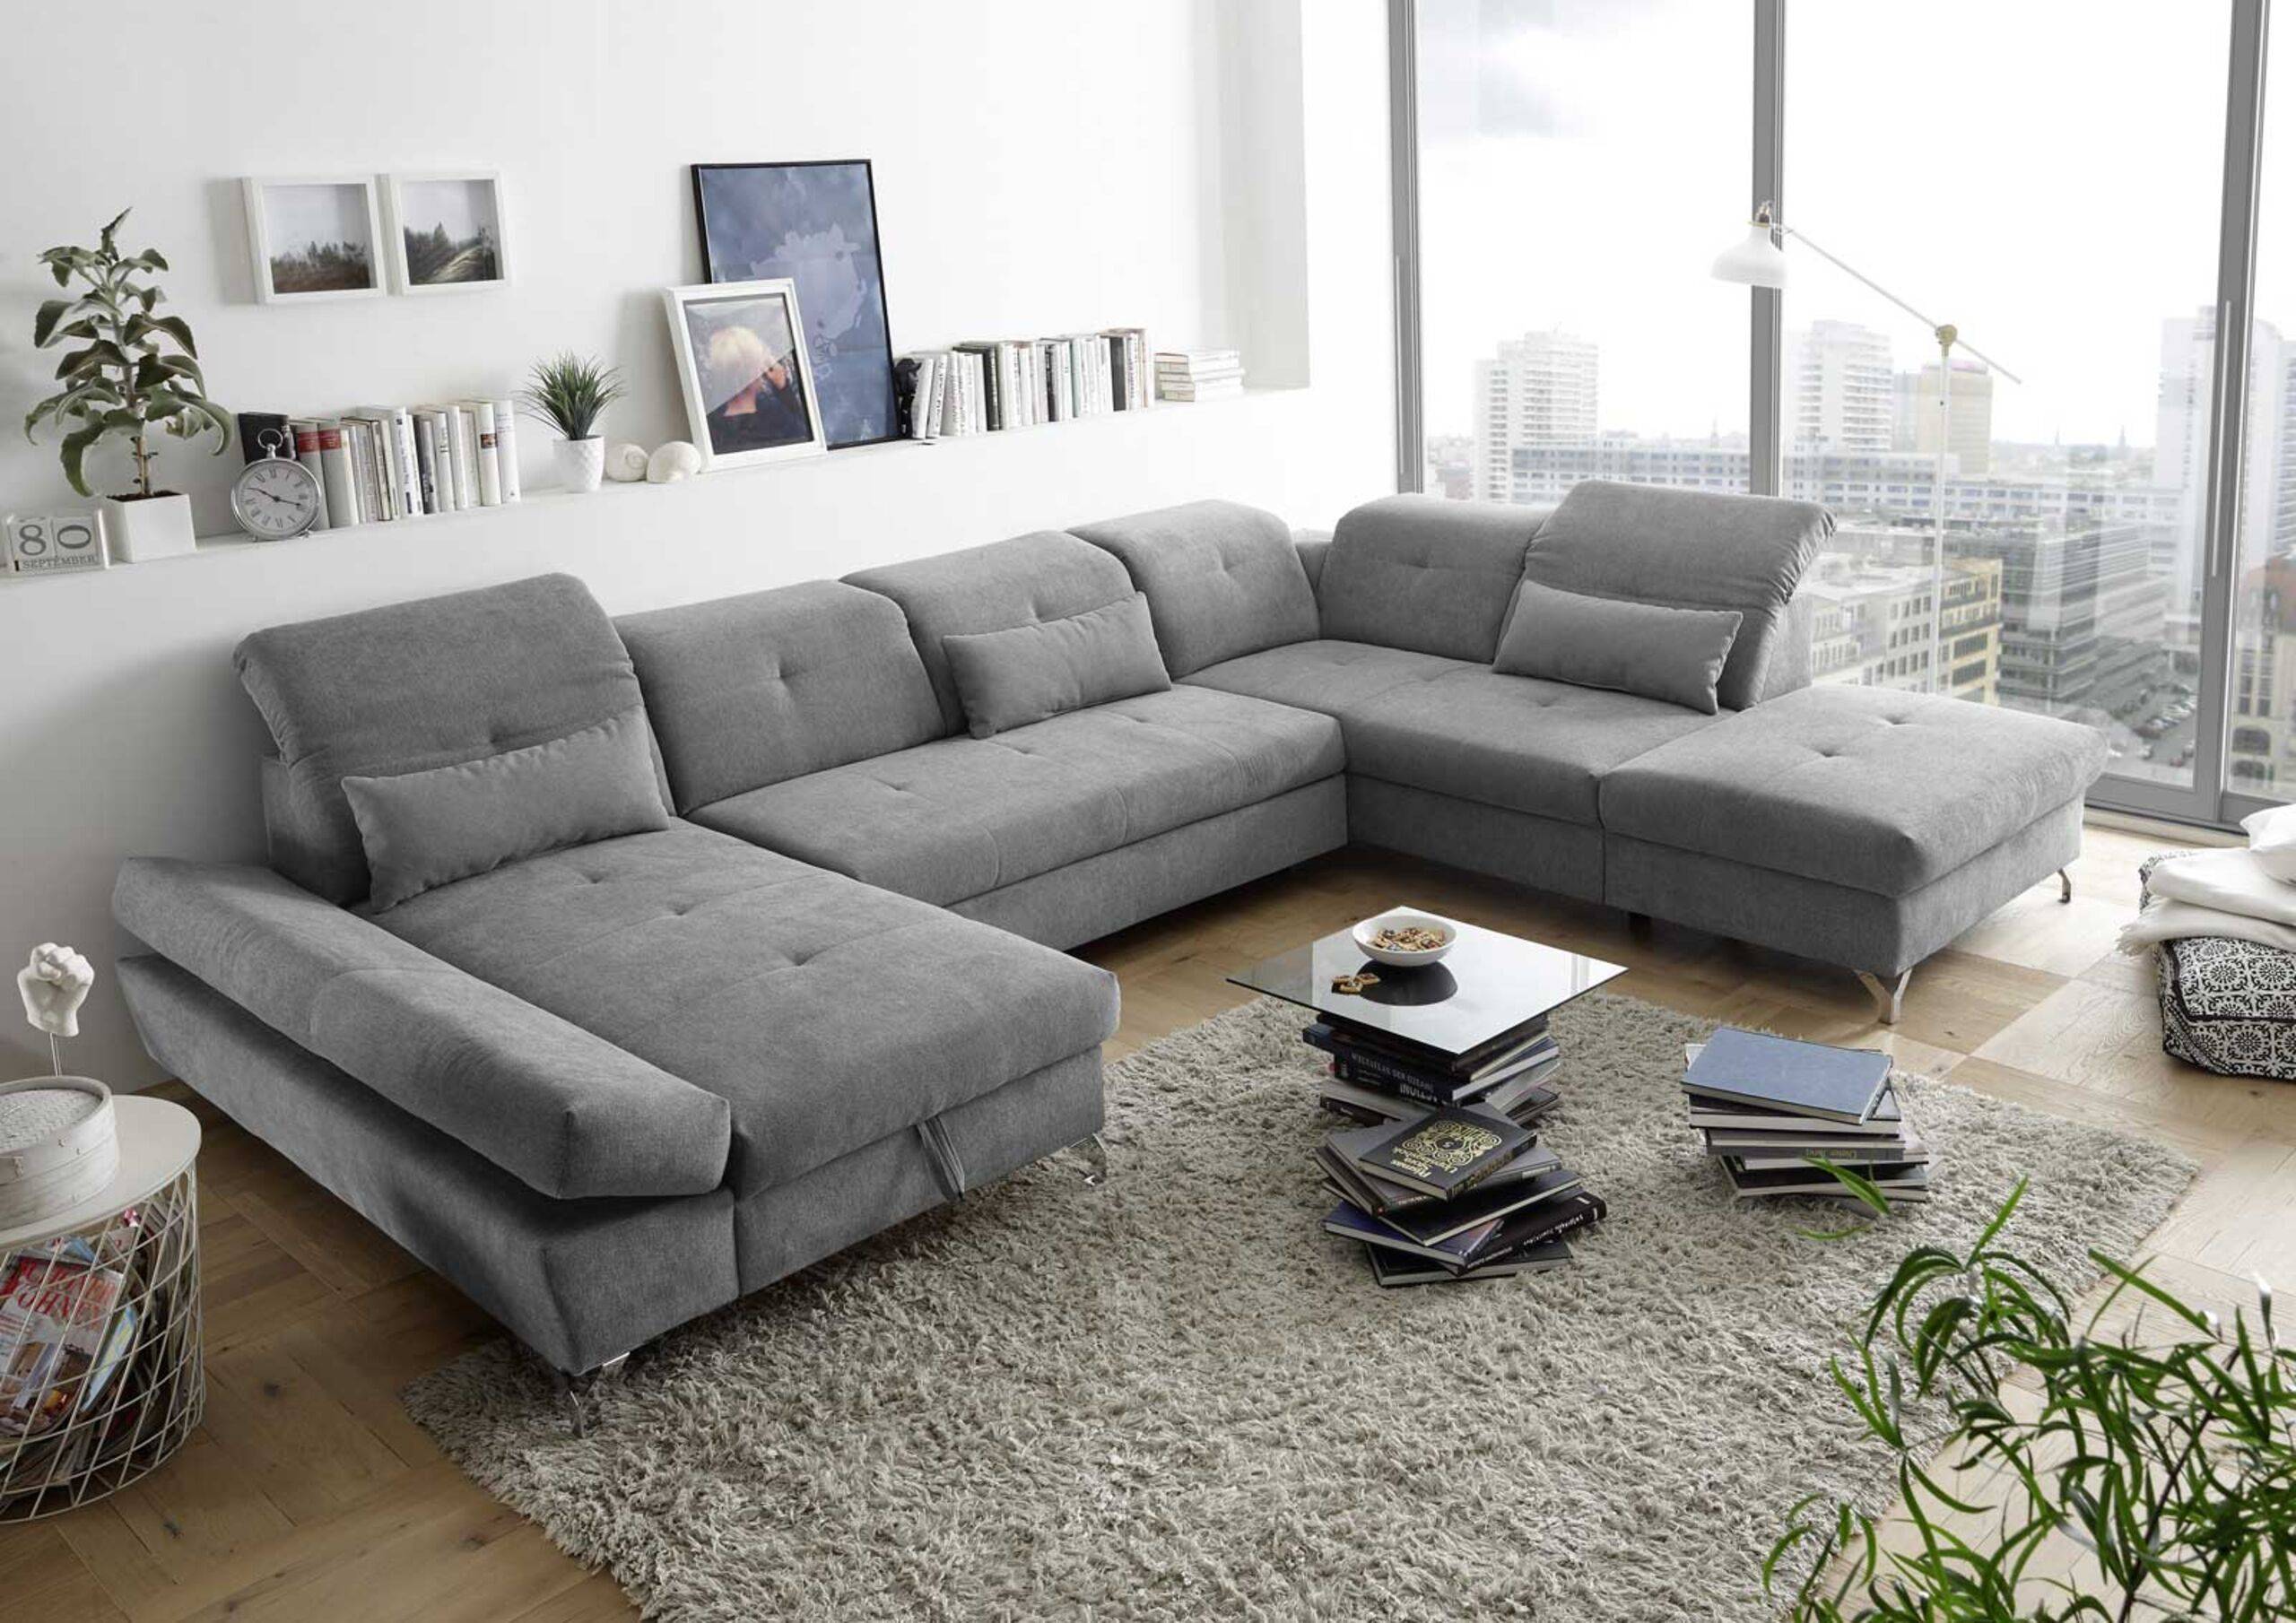 Canapé panoramique gris confortable avec accoudoirs réglables et coffres de rangement, tapis gris, plantes, livres et tableaux 